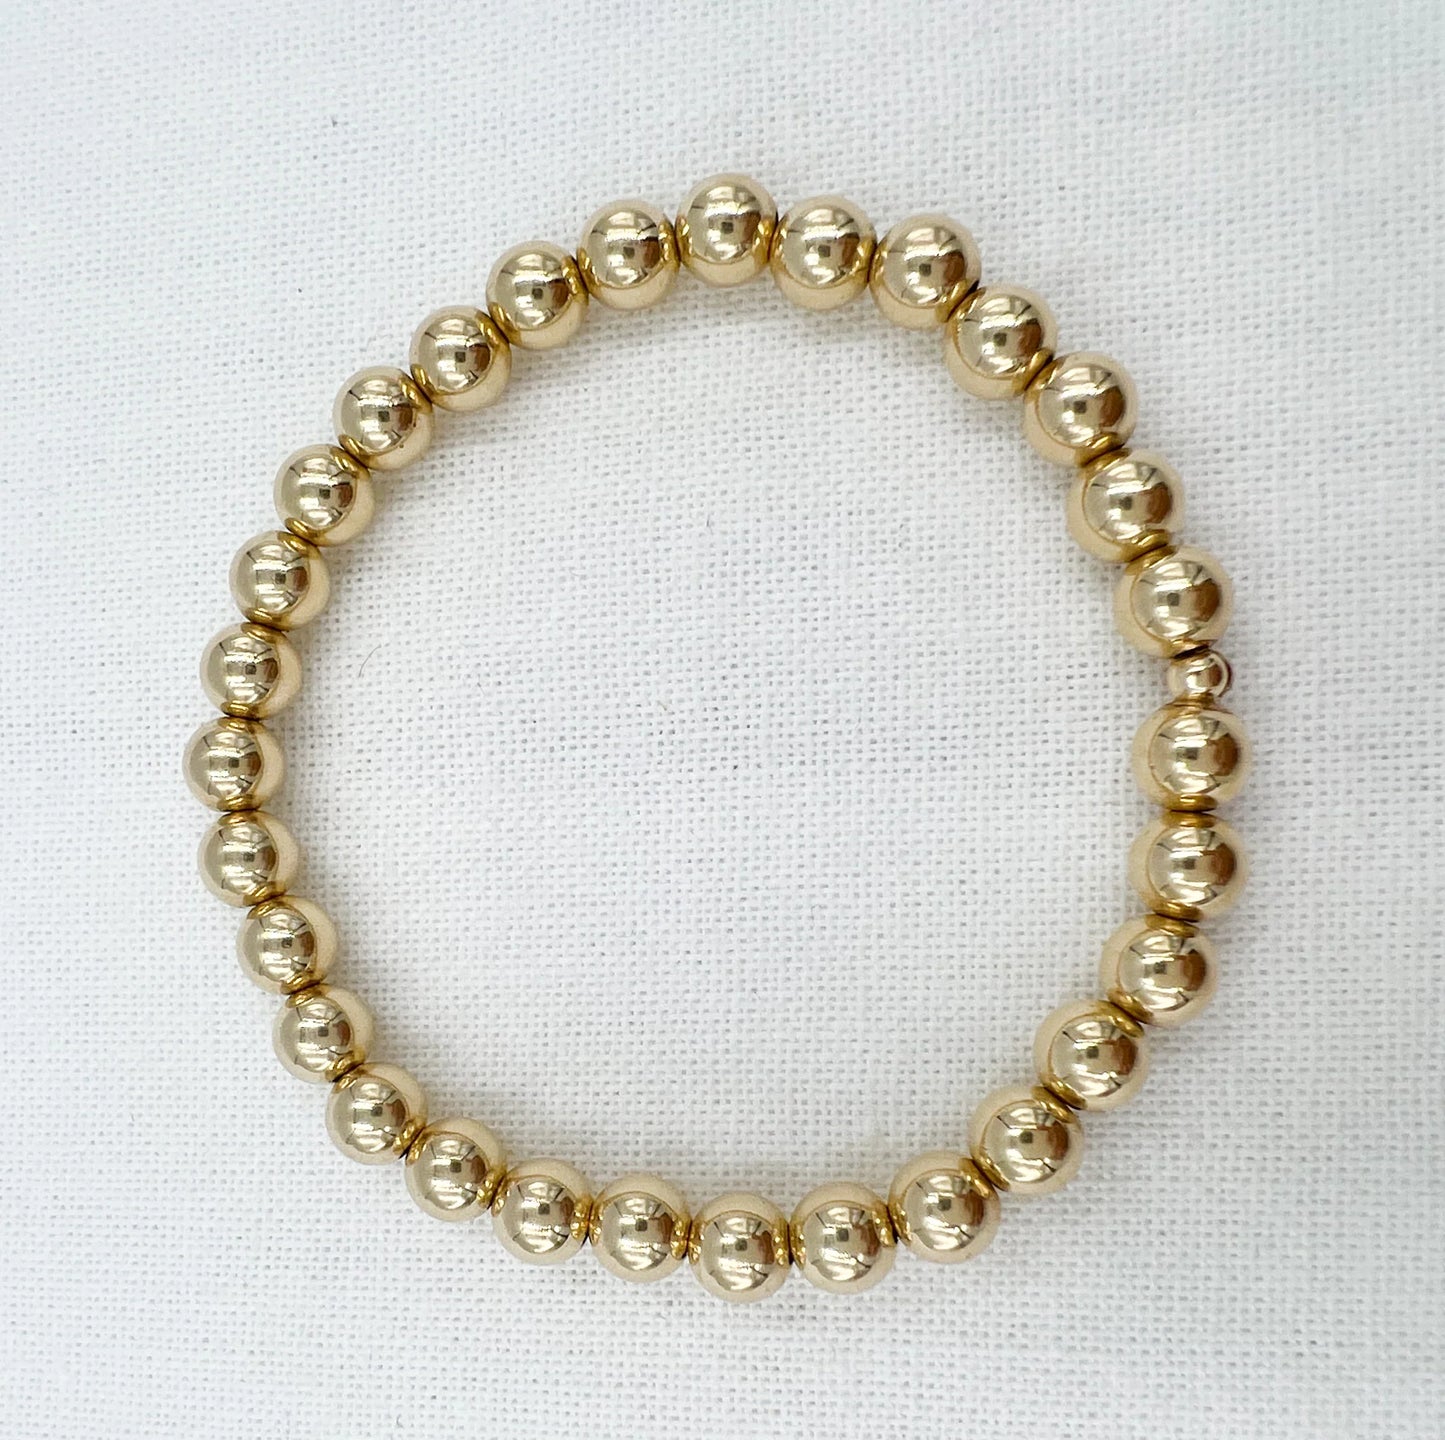 Gold Leave On Bracelet - 6mm